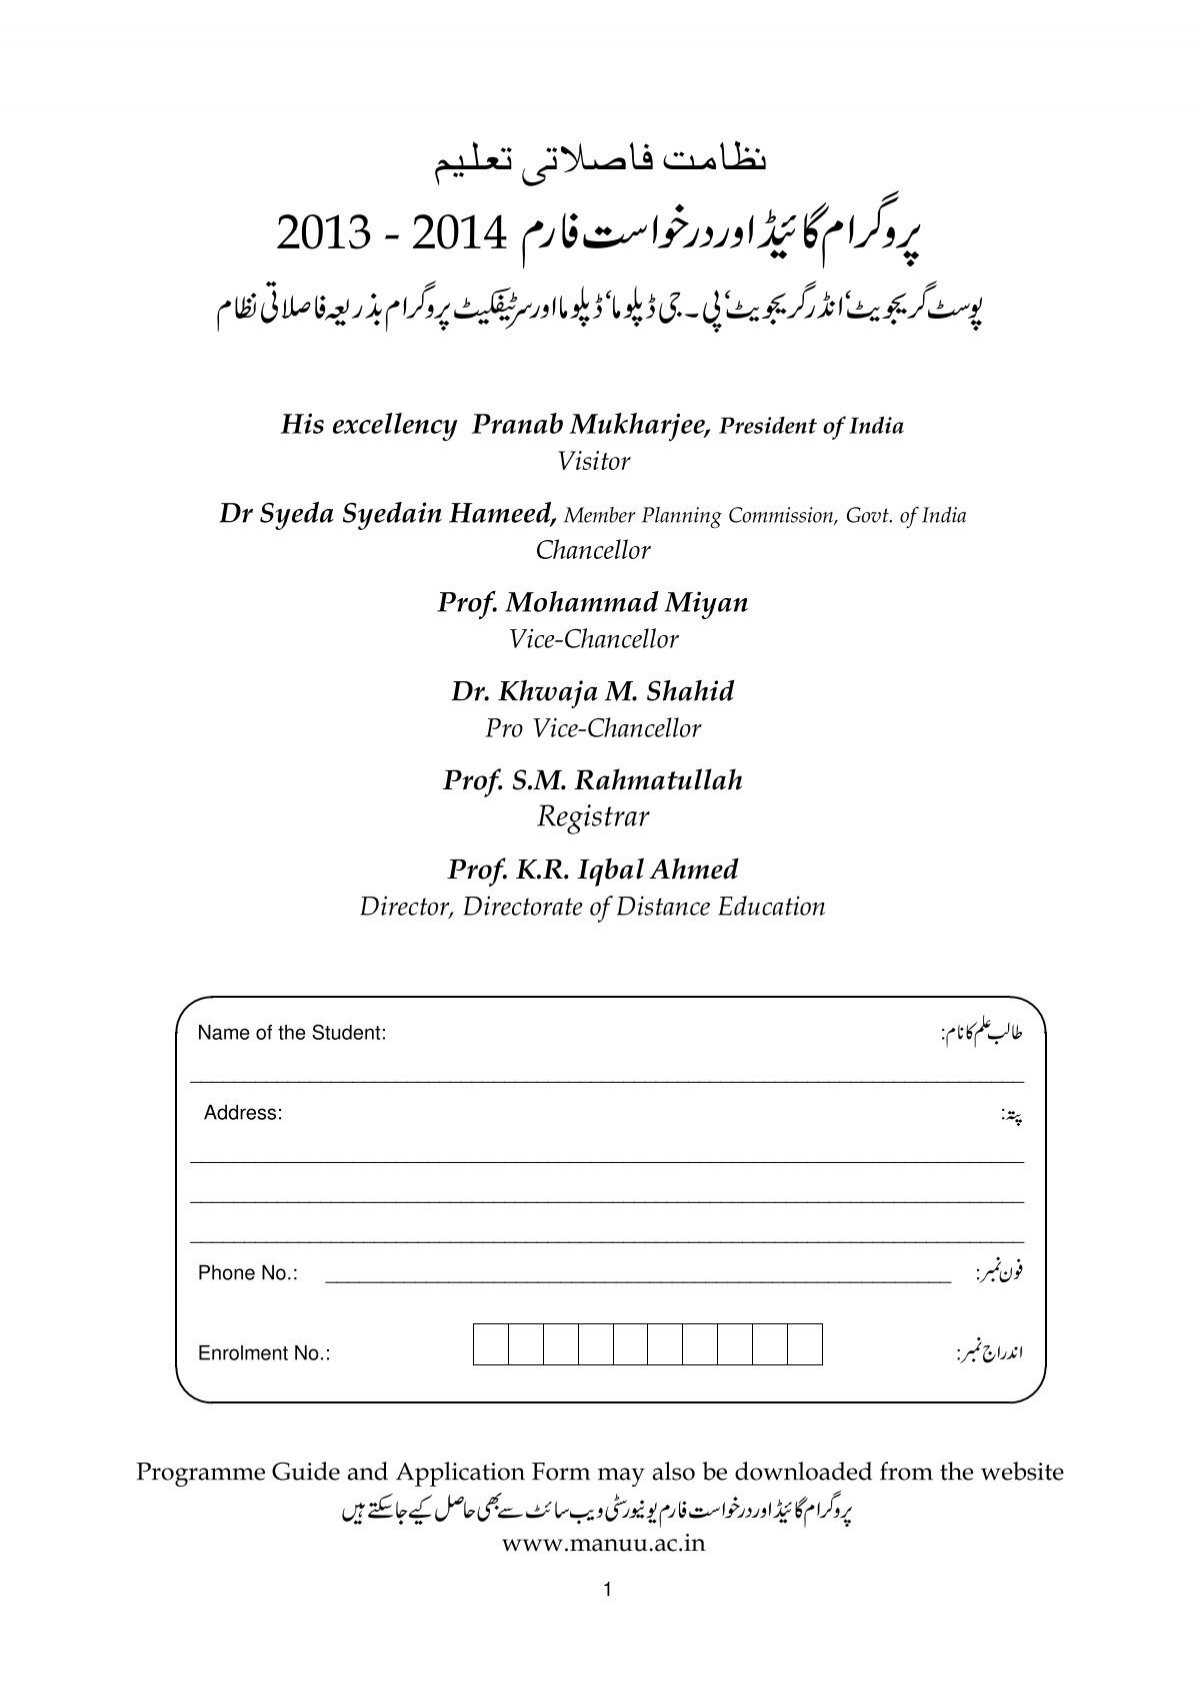 Prospectus And Application Form Maulana Azad National Urdu